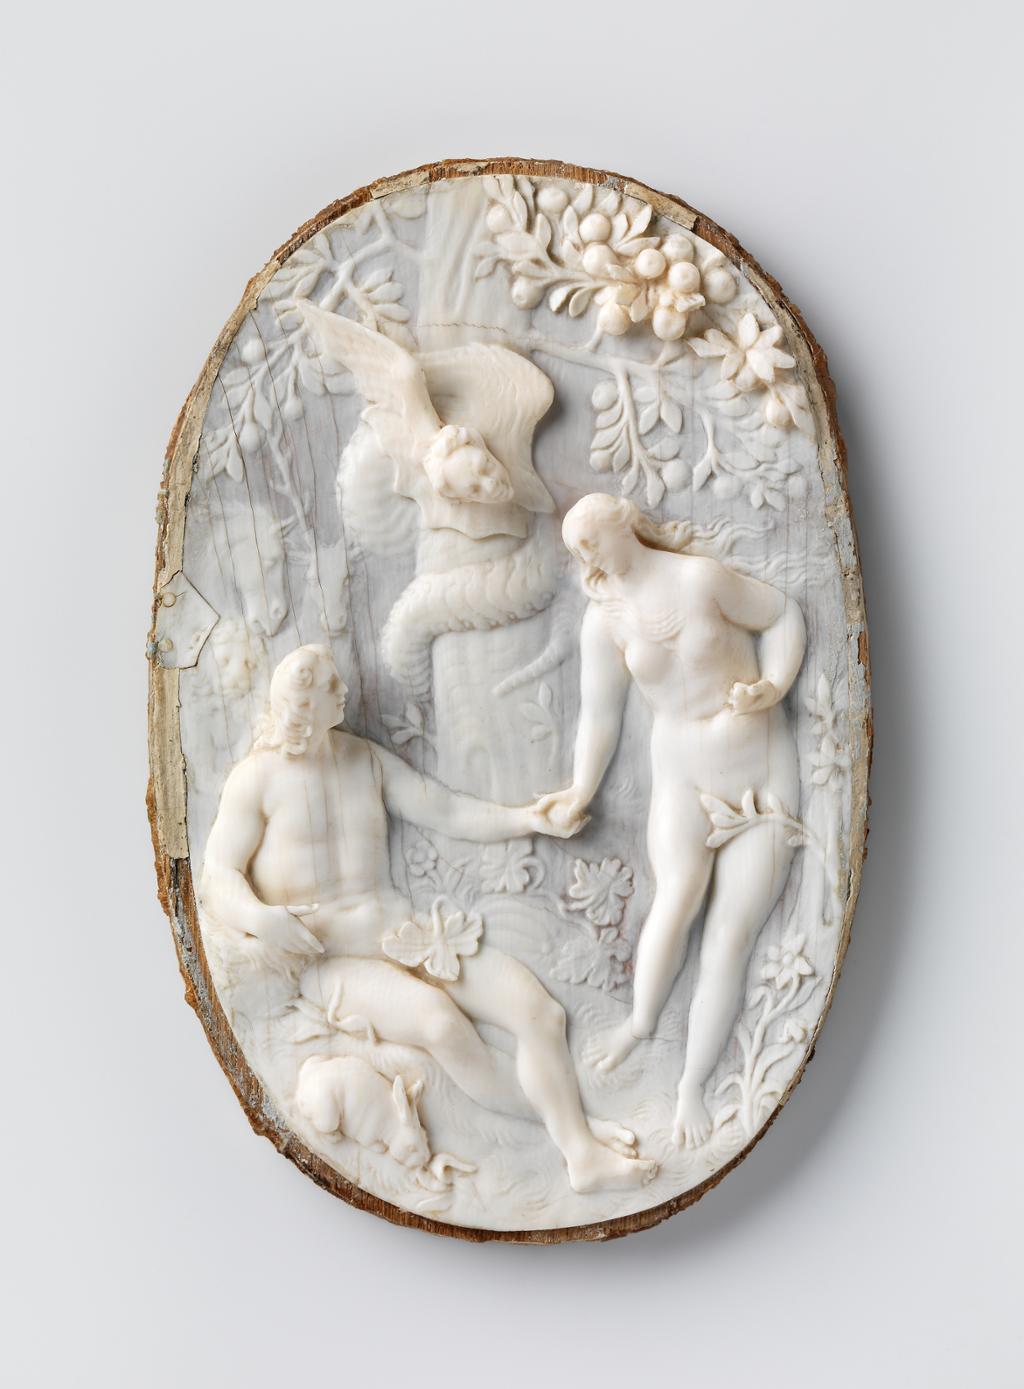 Adam og Eva blir drevet ut av Paradis. Foto av relieff i elfenben.